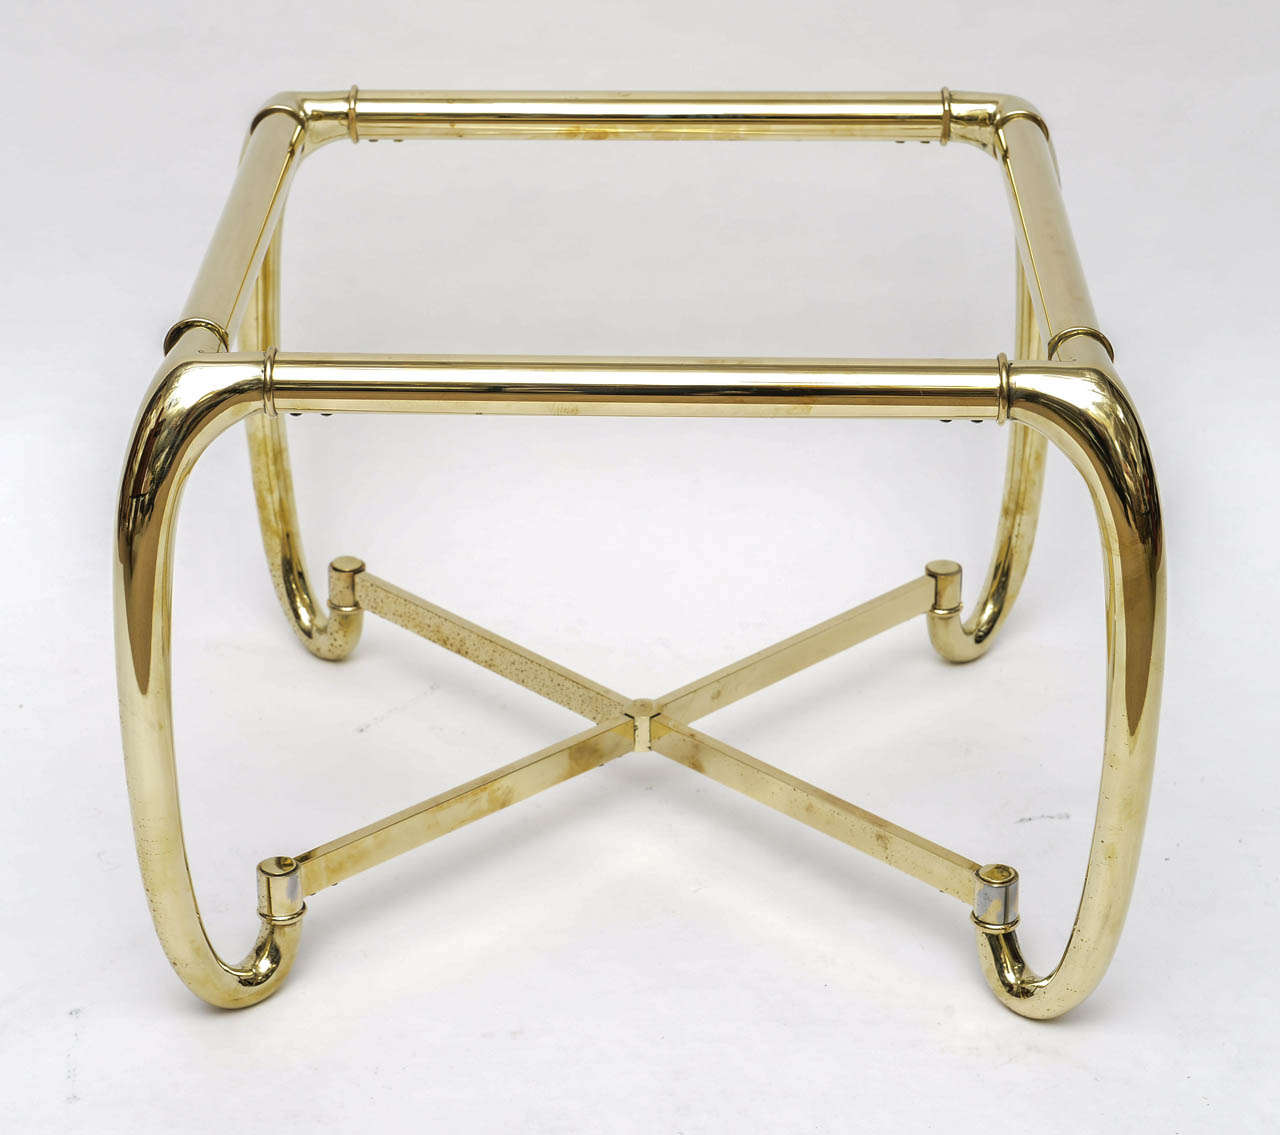 Italian side table in brass in the Art Nouveau style.